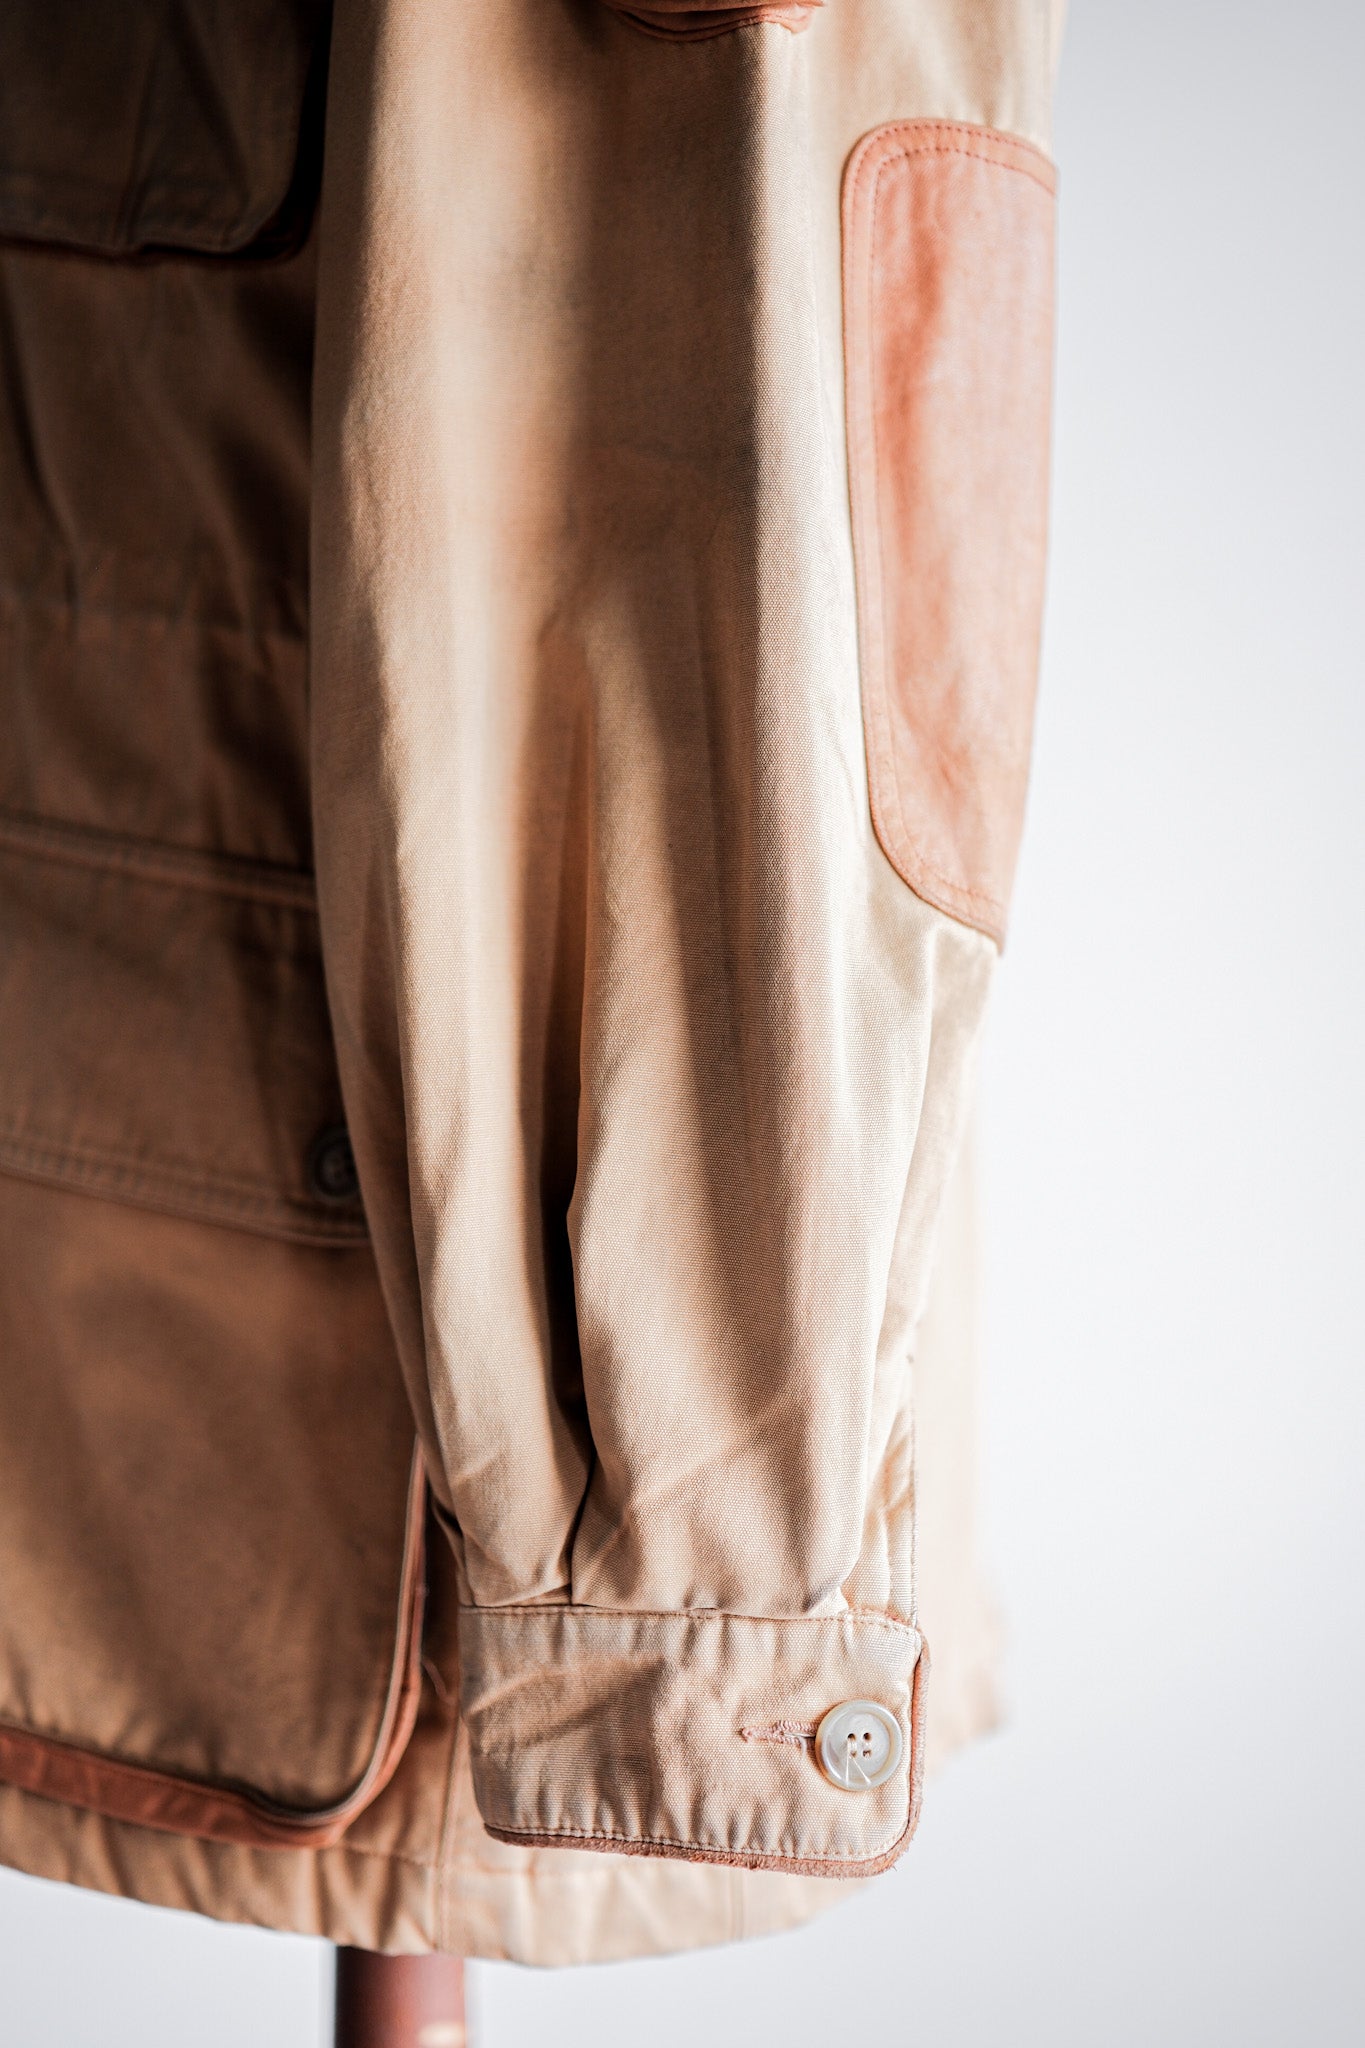 [~ 90 년대] Willis & Geiger Cotton Safari Jacket Size.M